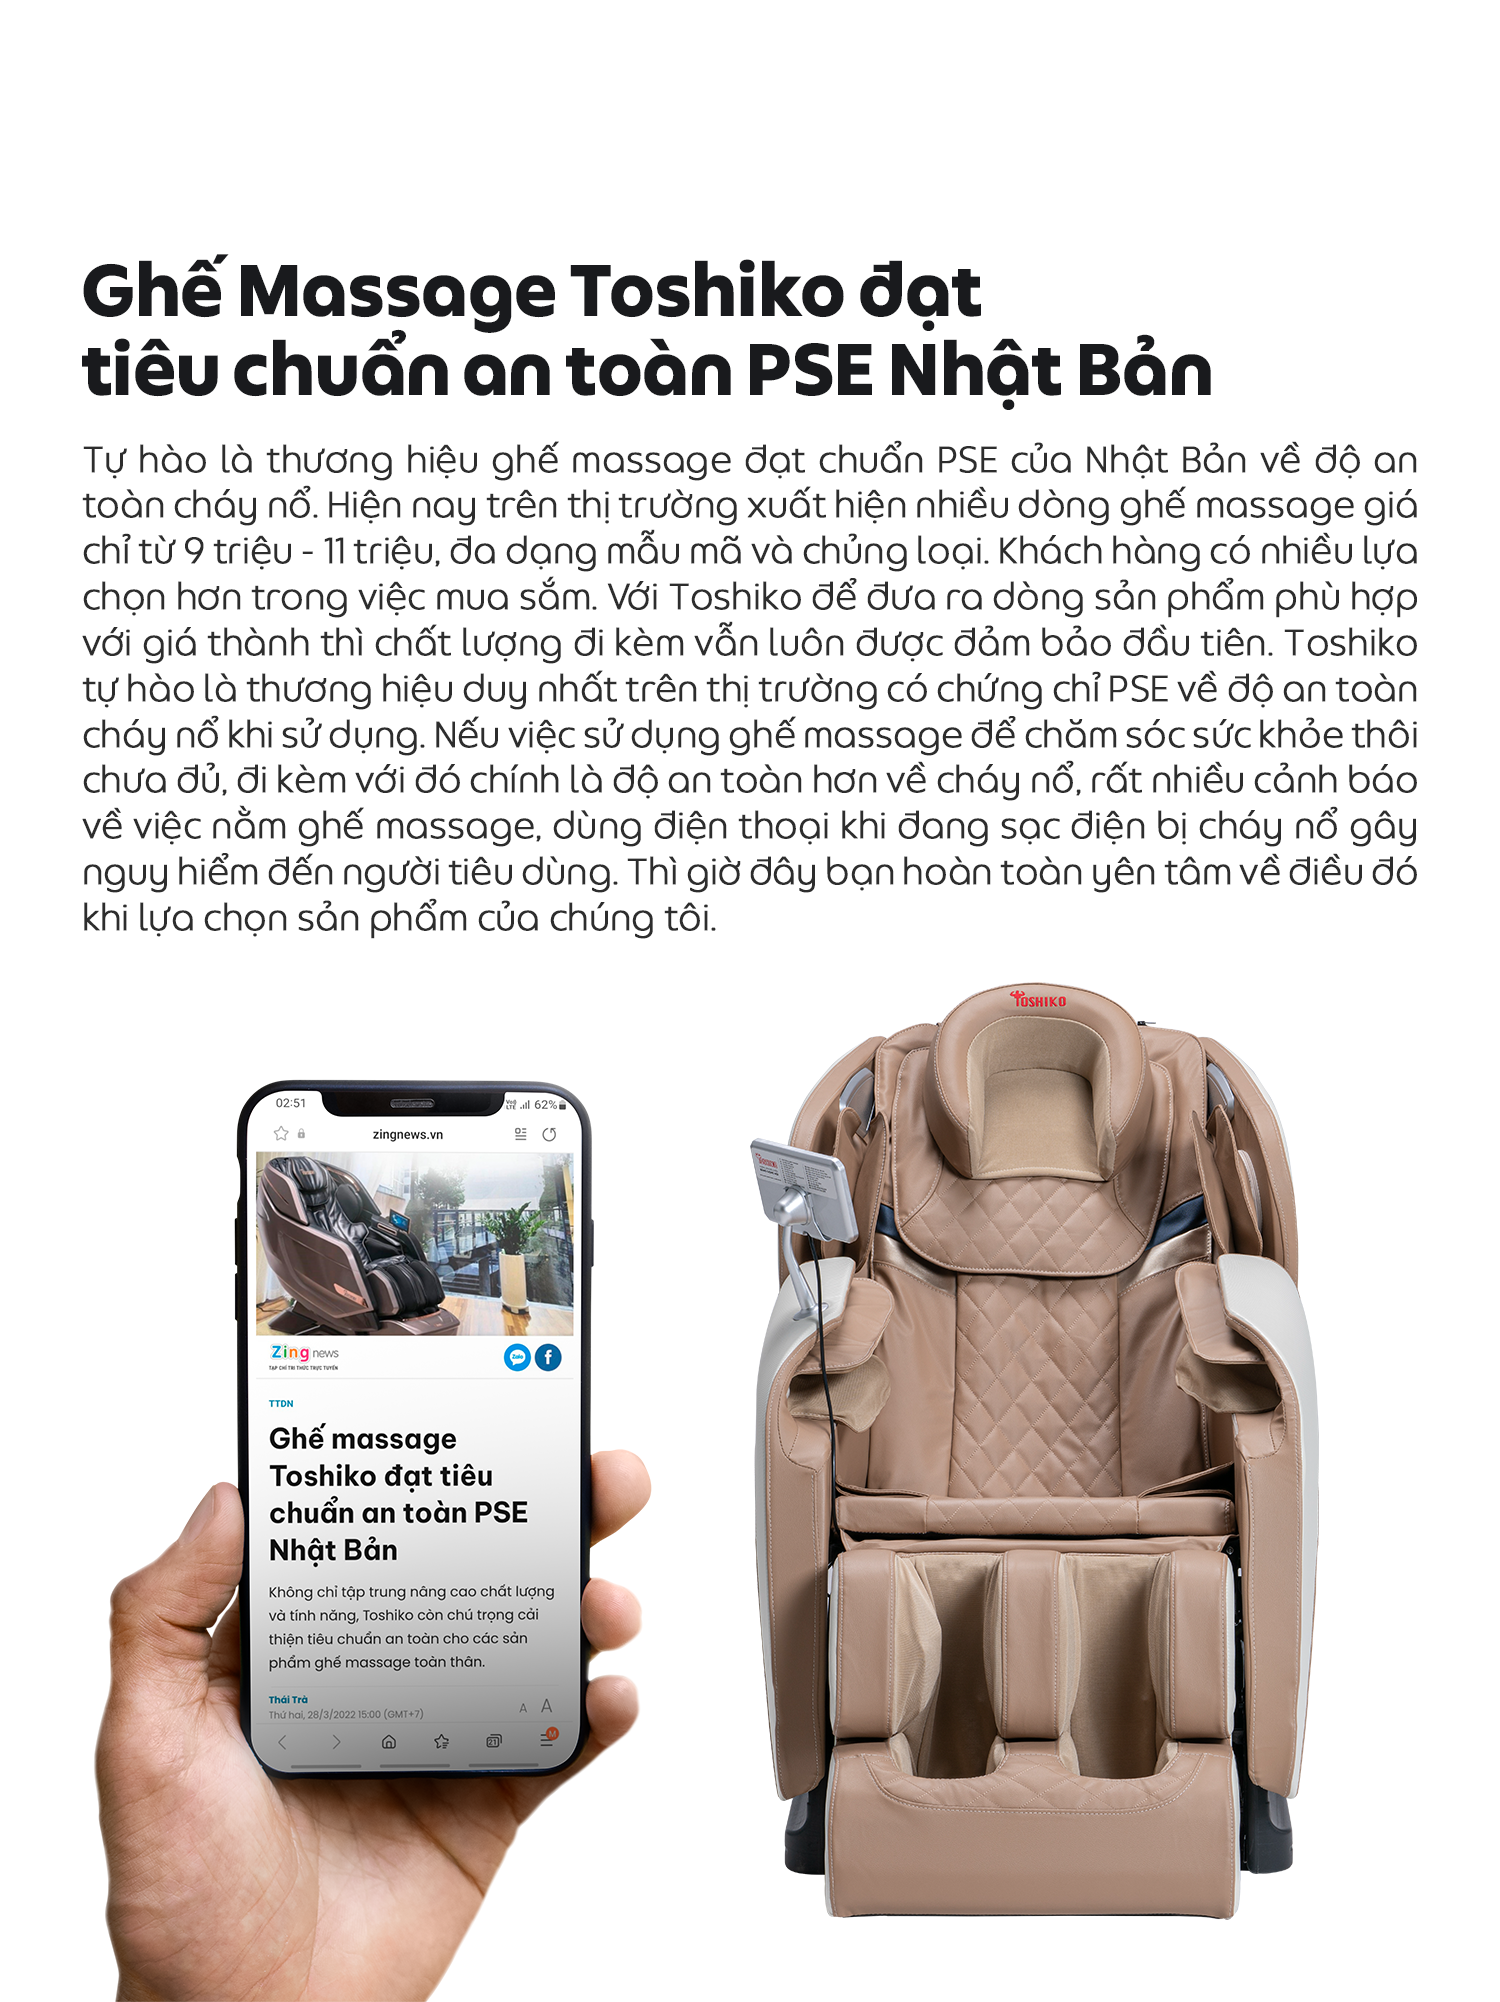 [Bảo hành 6 năm + Trợ giá 2,8tr] Ghế Massage Toàn Thân Đa Năng Toshiko T21 PRO điều khiển ghế bằng giọng nói tiếng Việt, Chức năng massage tổ hợp 15 bài theo công nghệ tiên tiến, nhiệt hồng ngoại cao cấp